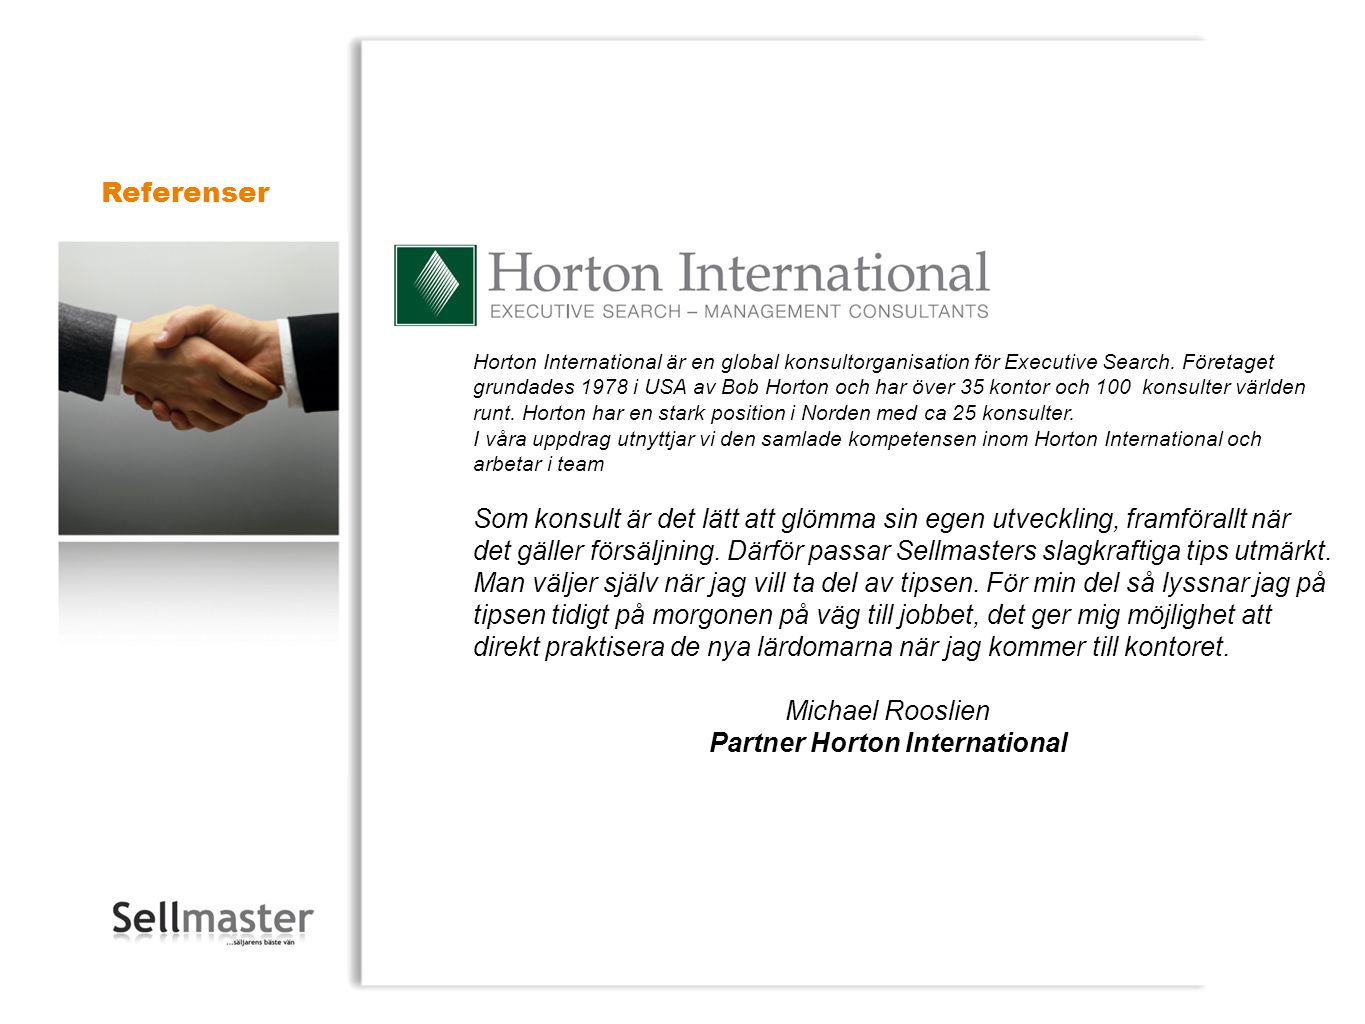 Partner Horton International